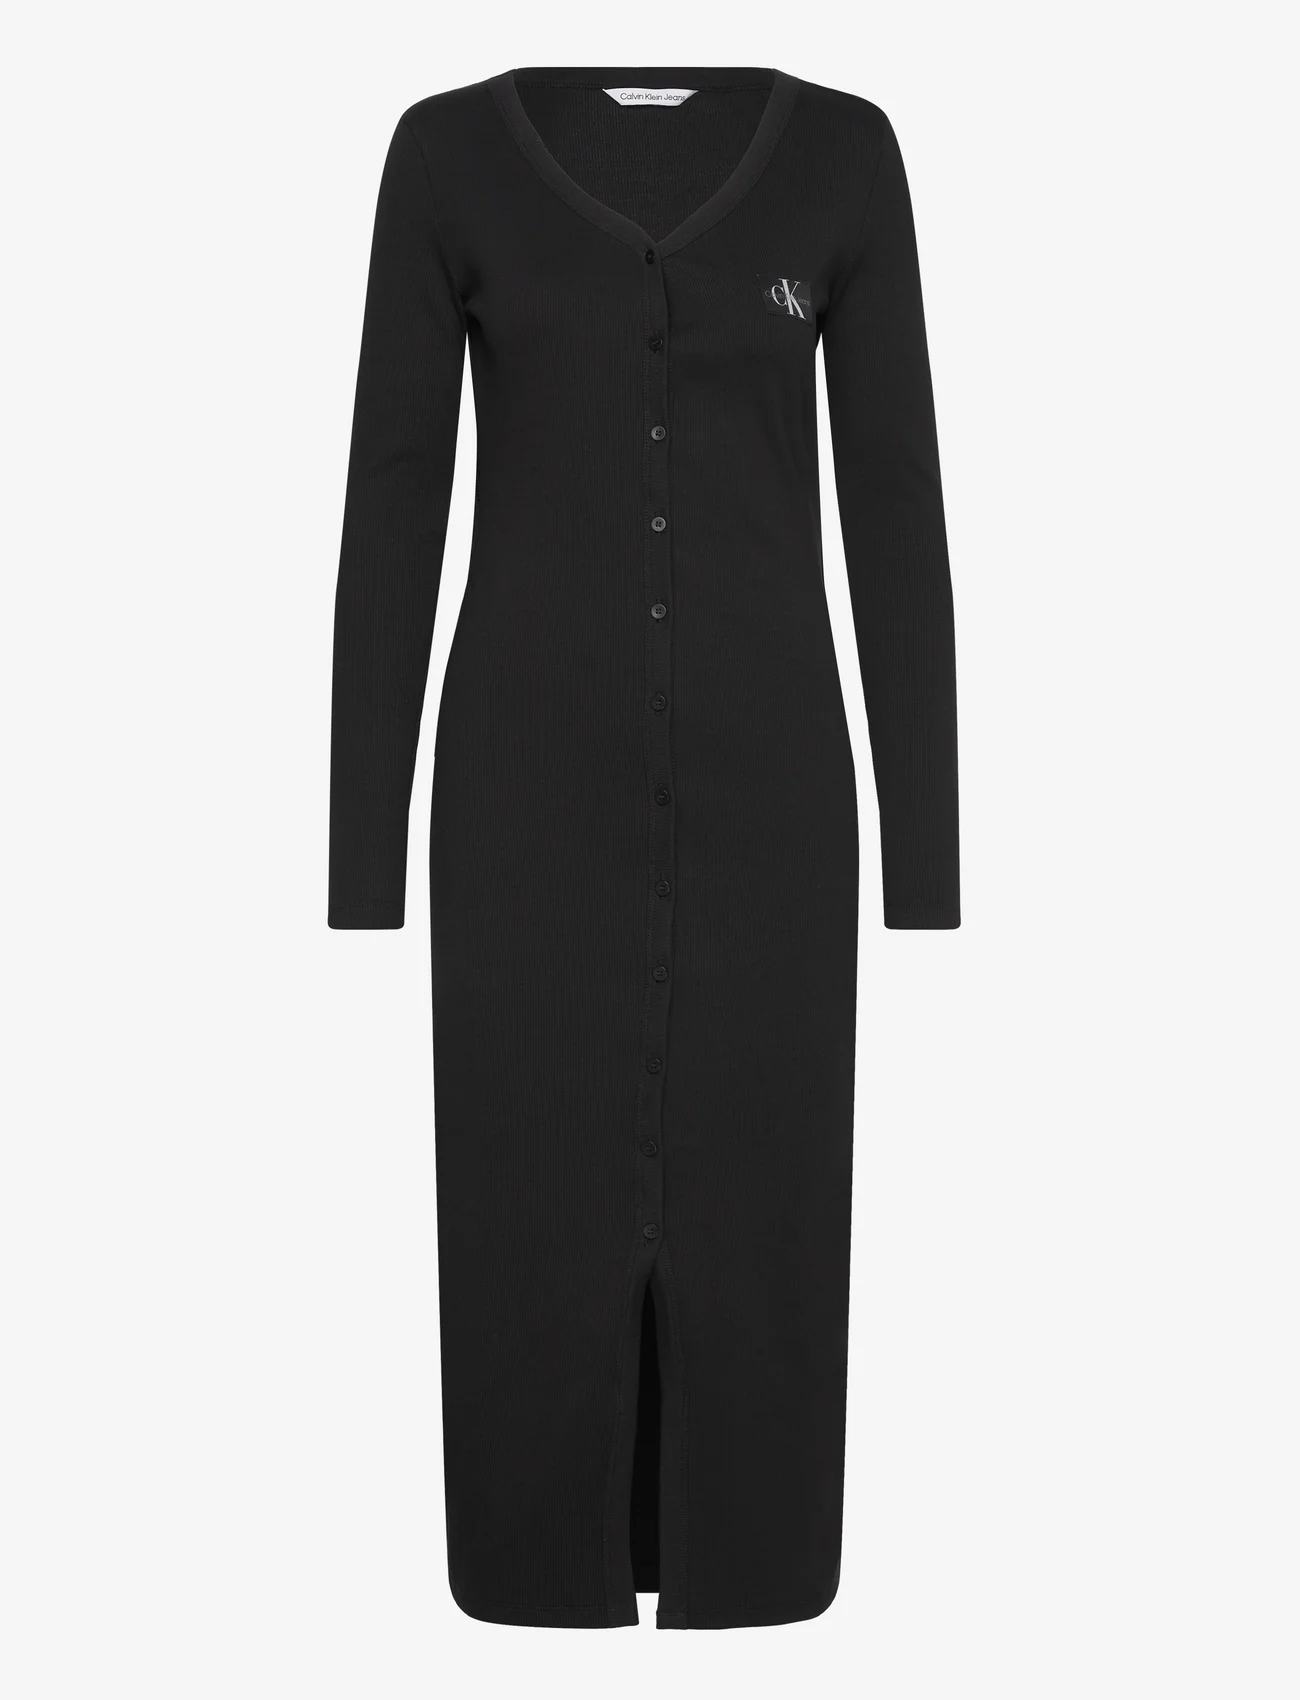 Calvin Klein Jeans - LABEL LONG SLEEVE RIB DRESS - stramme kjoler - ck black - 0